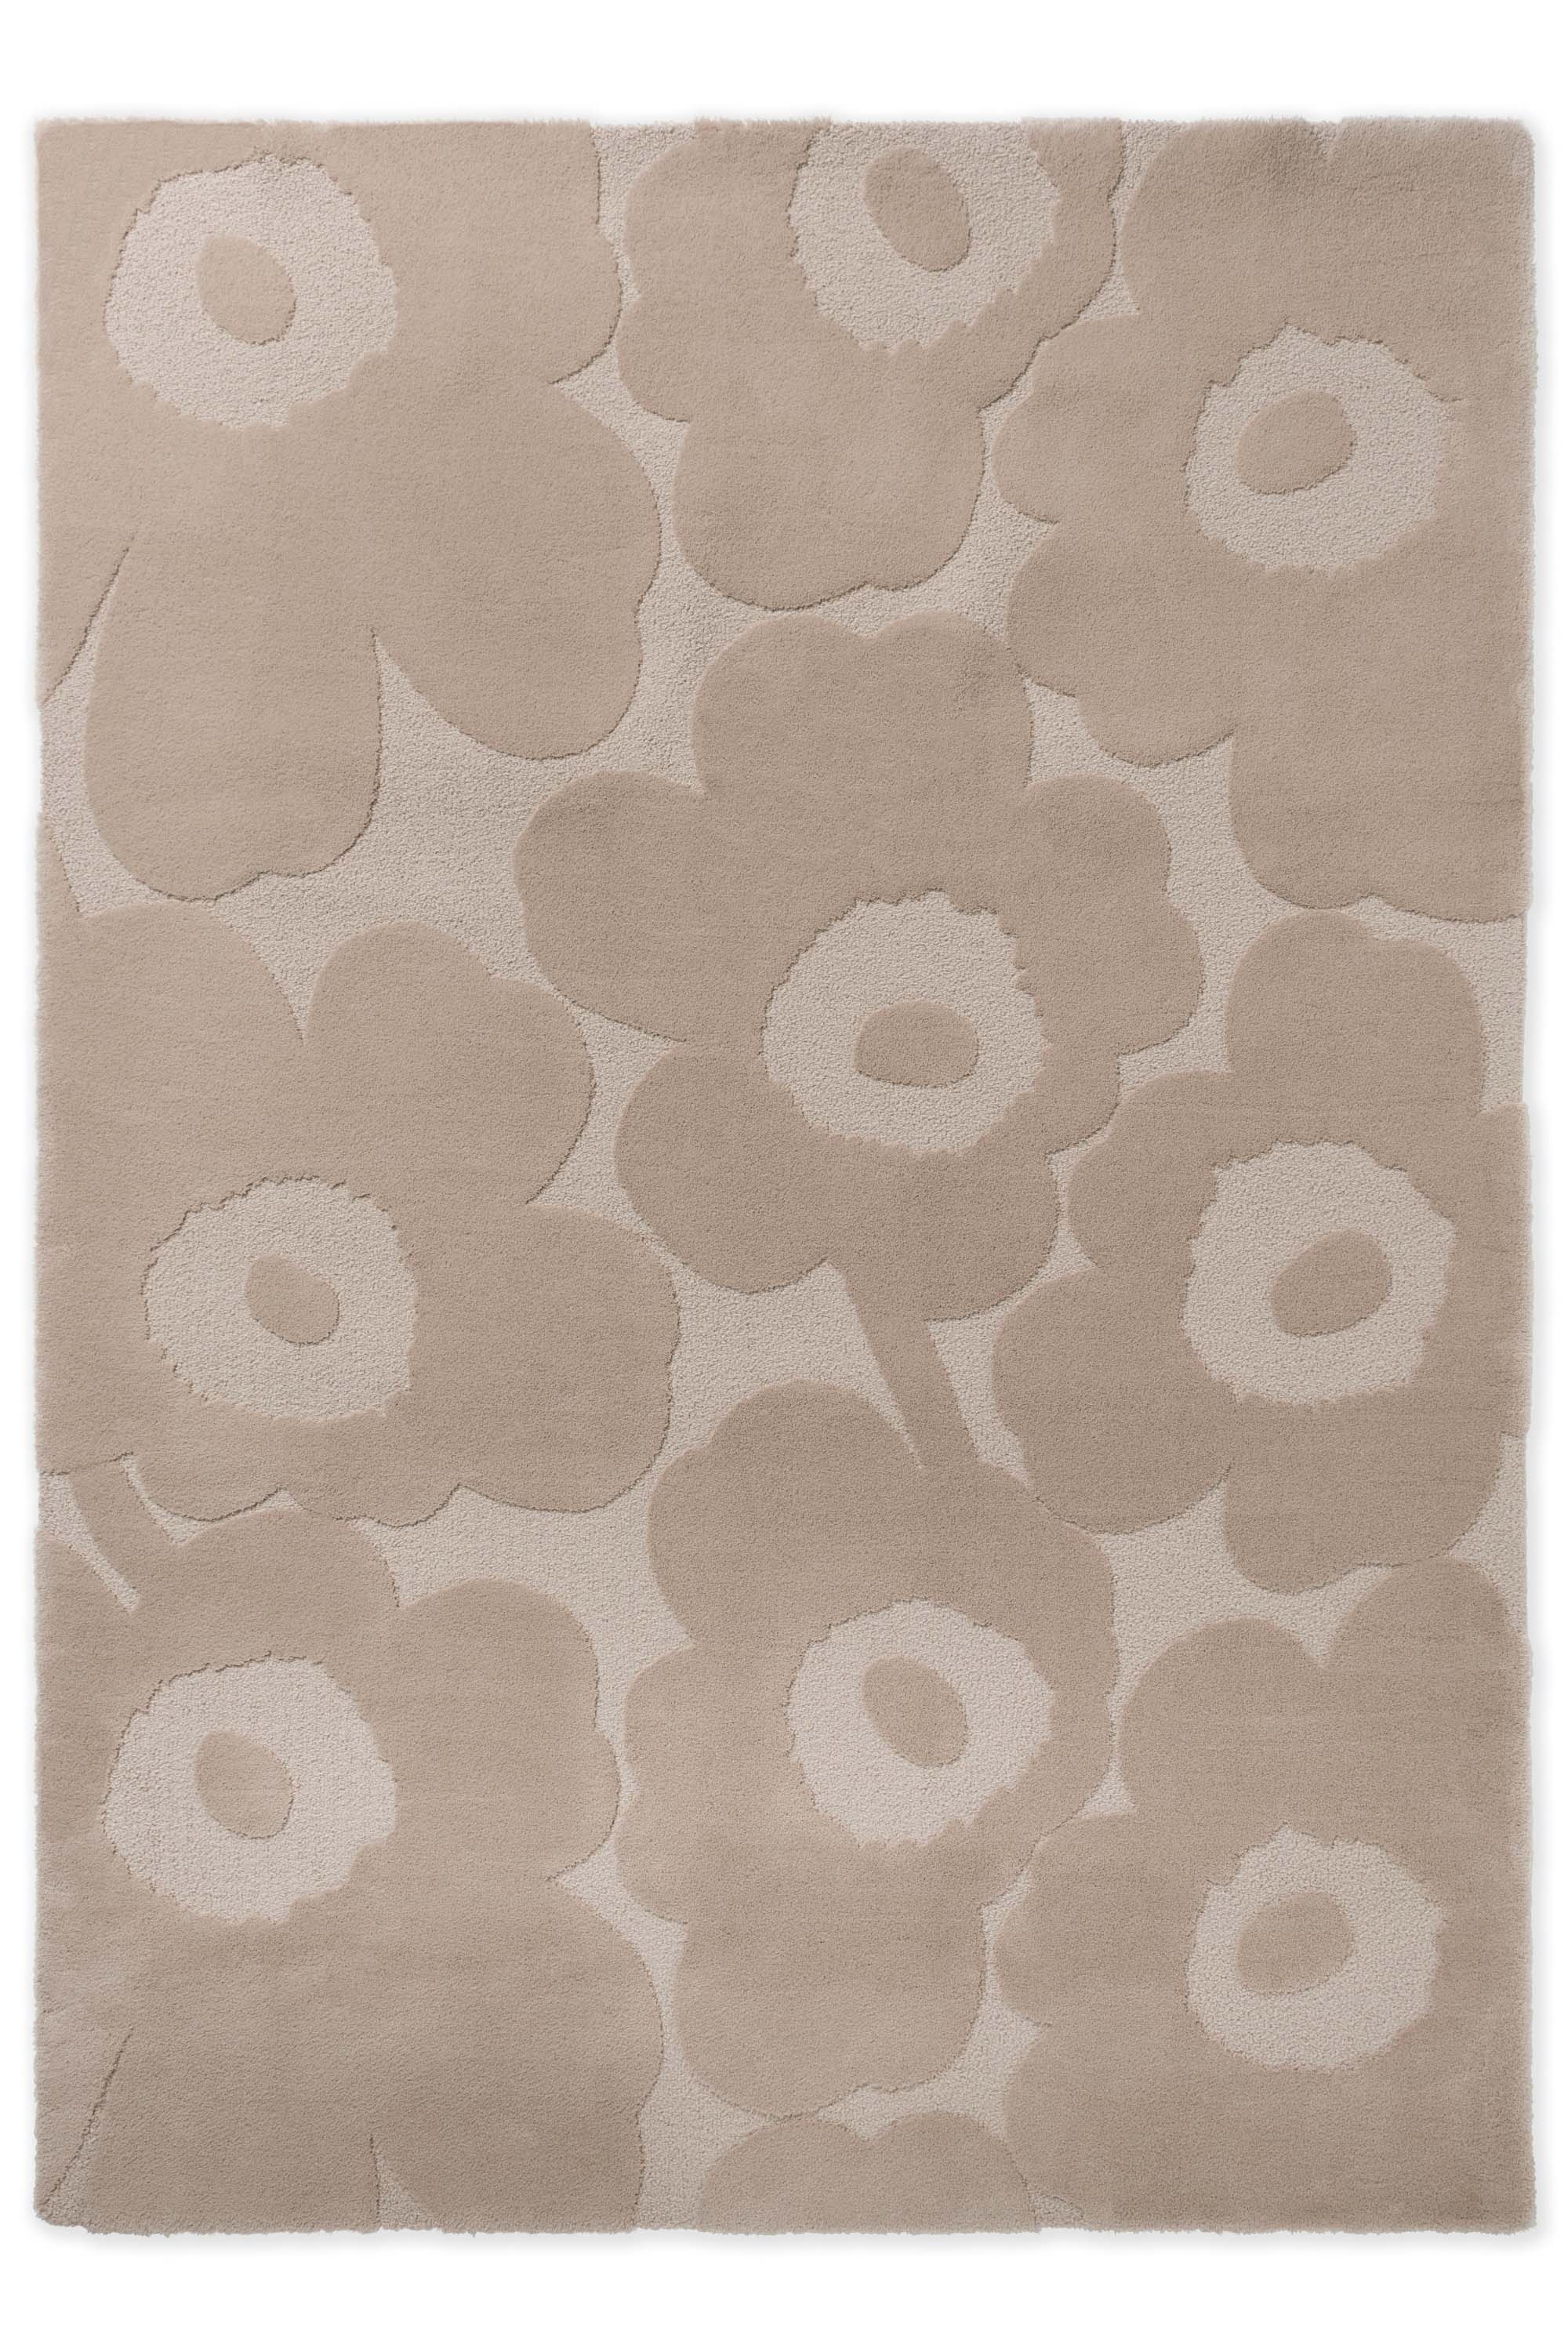 Beige patterned floral rug 